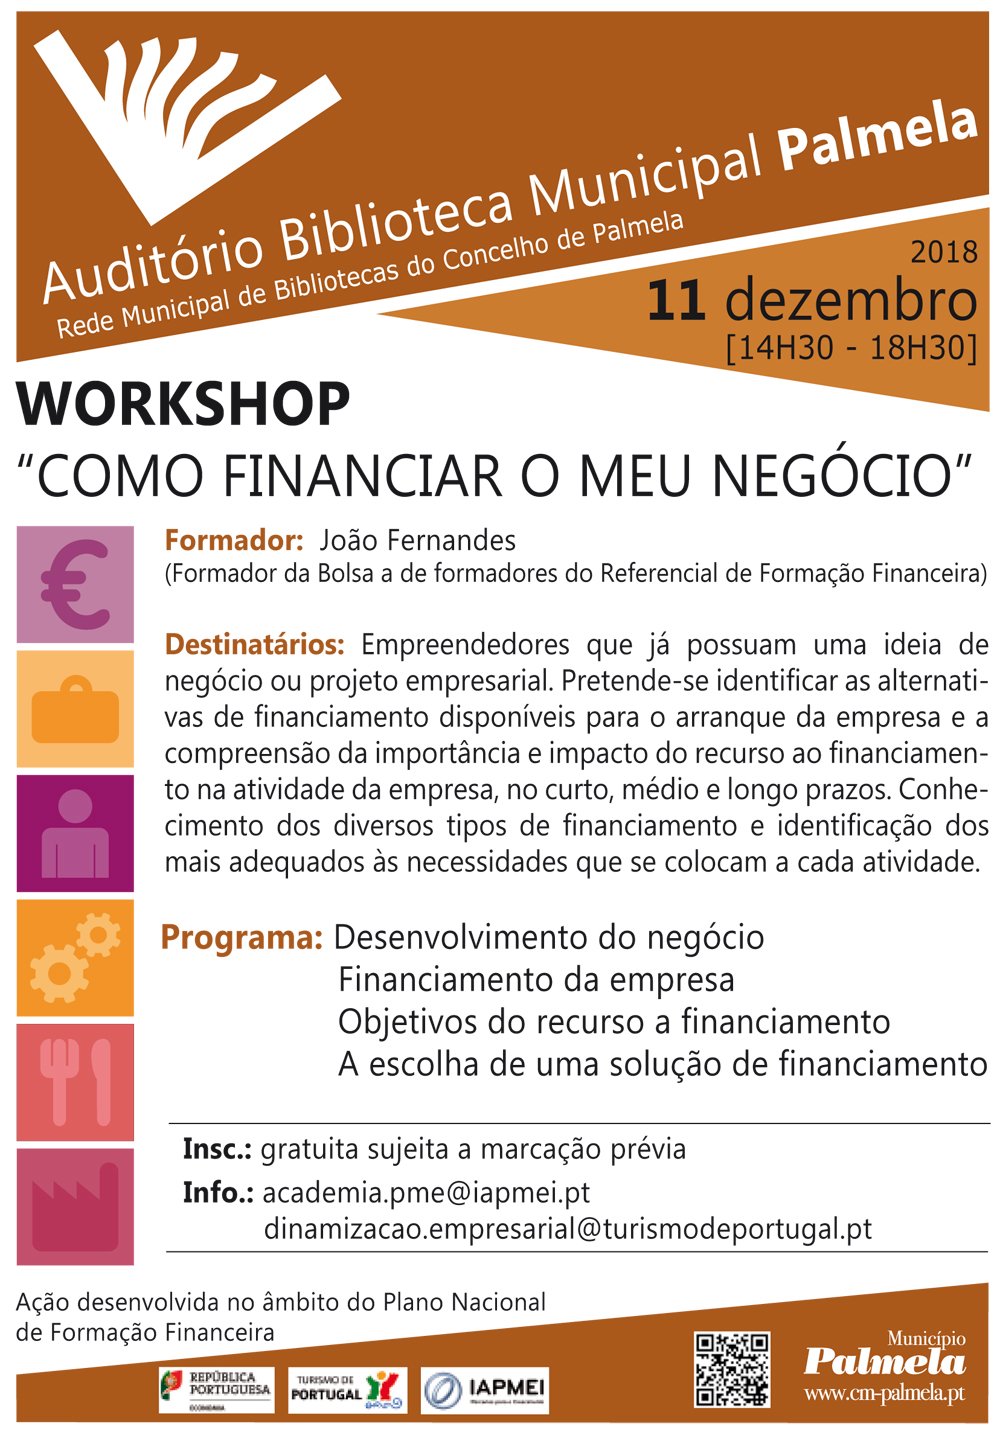 Workshop "Como financiar o meu negócio"